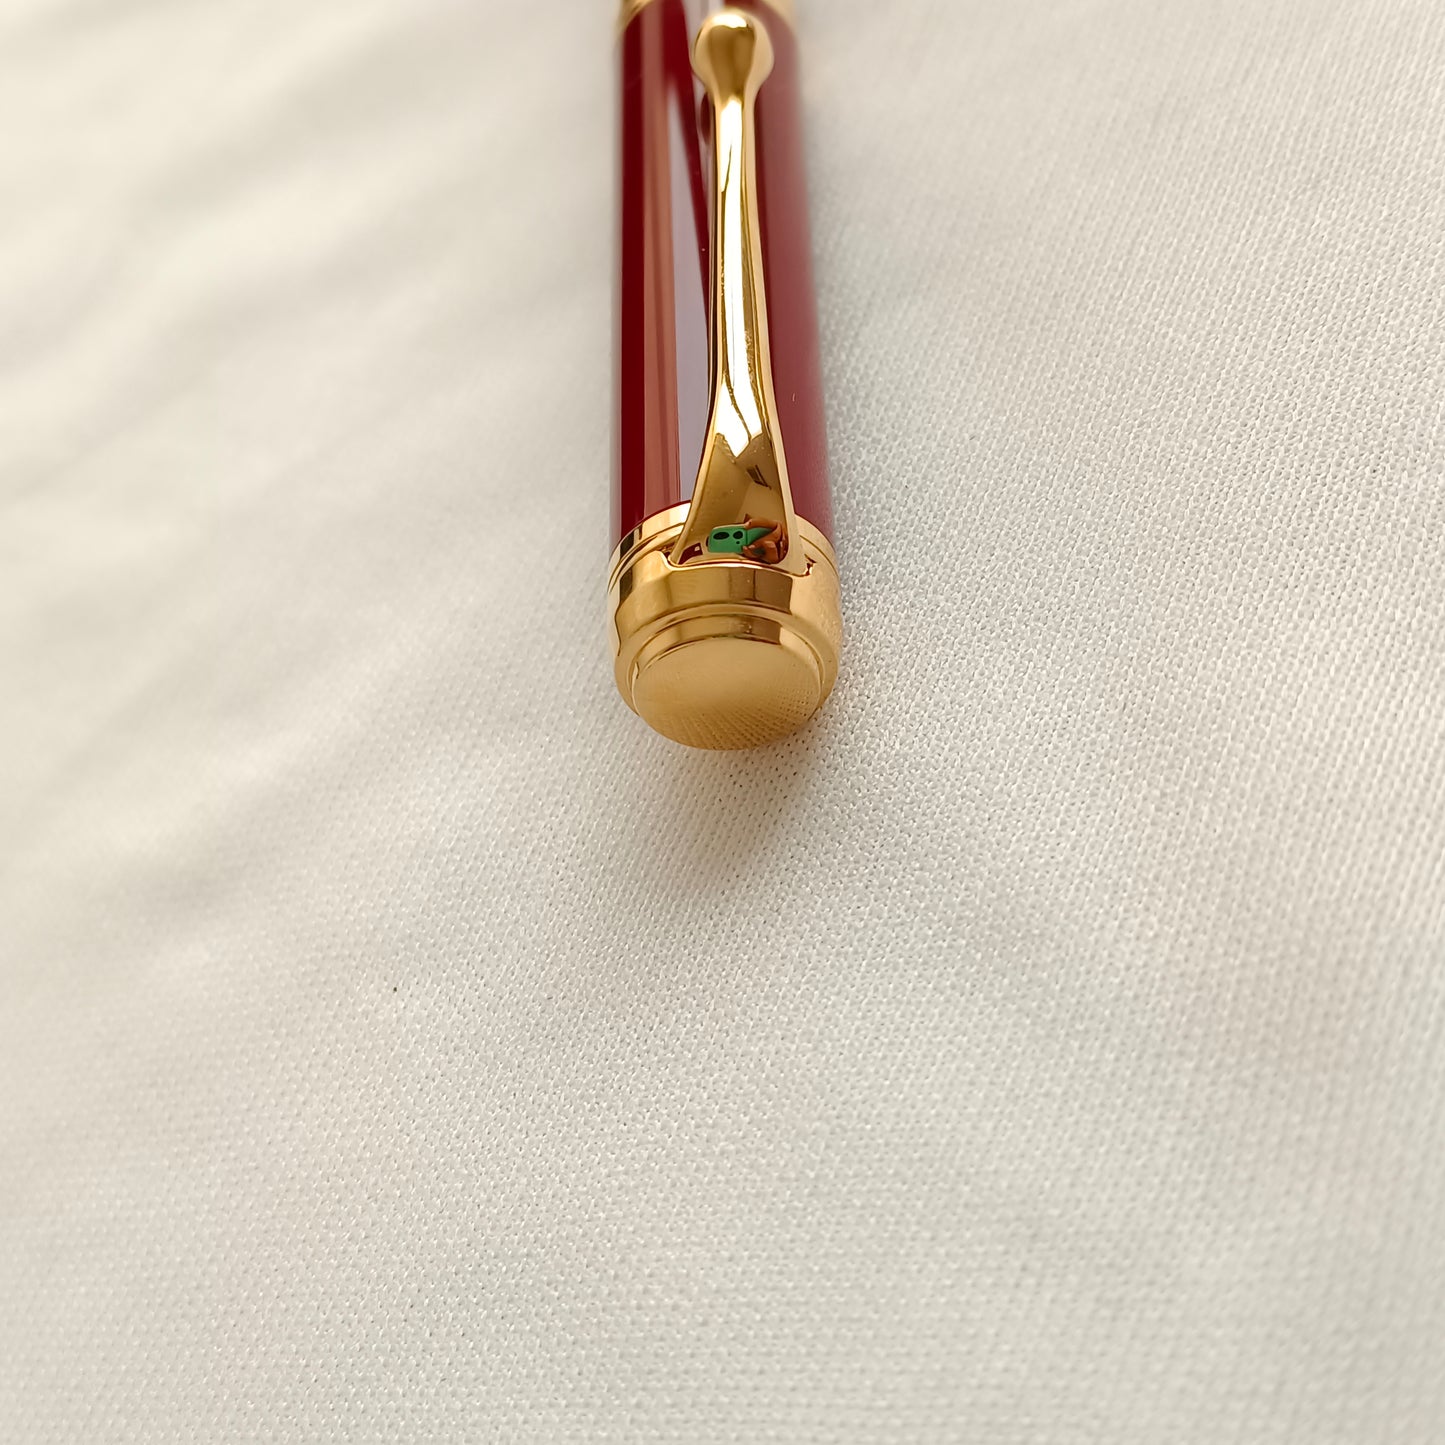 Aurora Talentum Burgundy Ballpoint Pen with Gold Trim